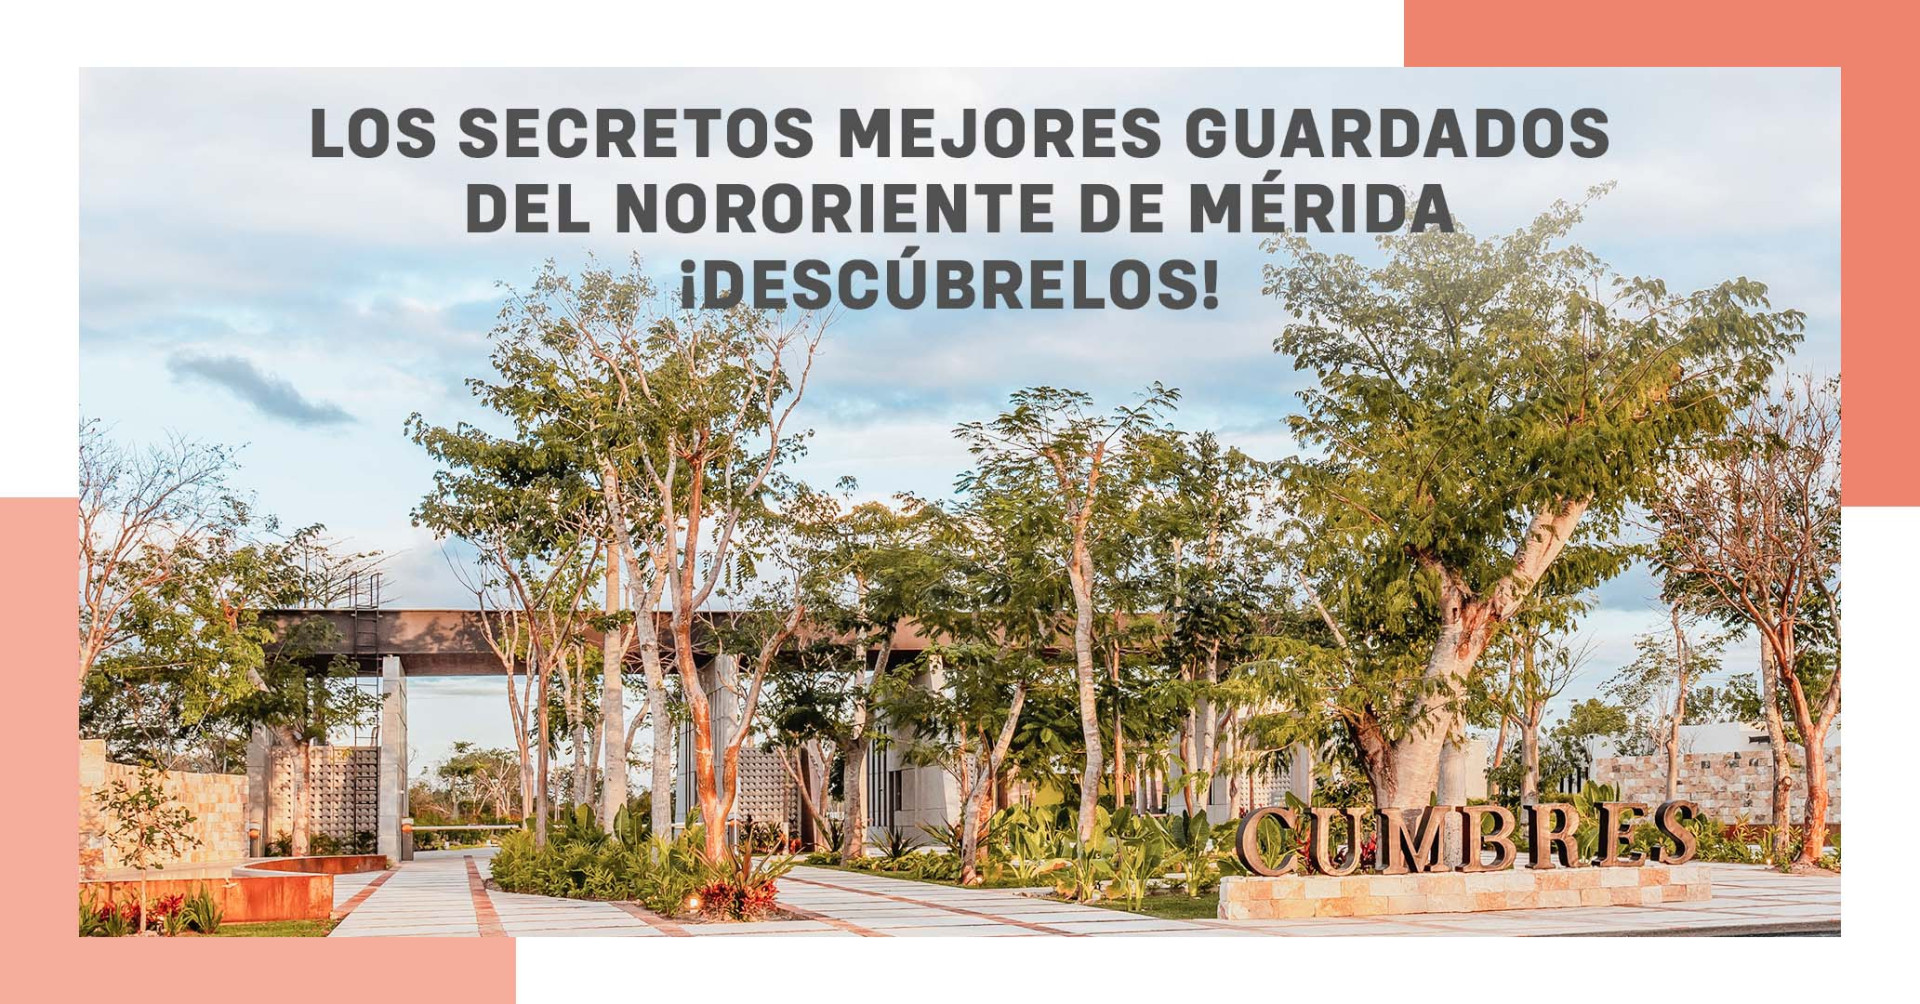 Los secretos mejor guardados del nororiente de Mérida: ¡Descúbrelos!